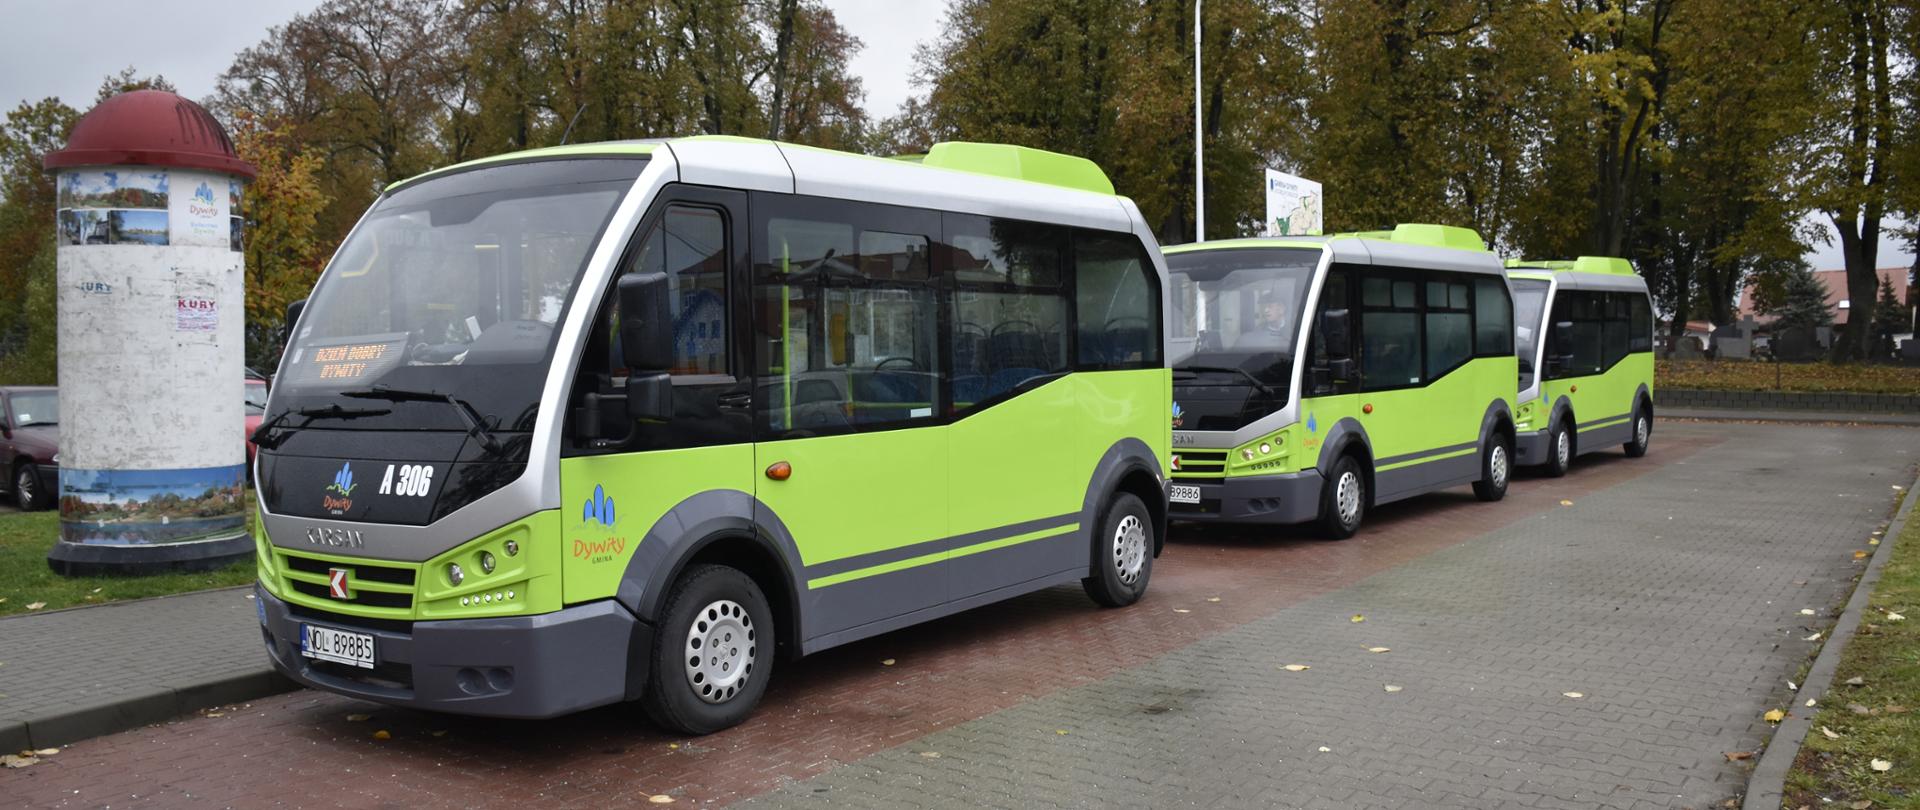 Fundusz rozwoju przewozów autobusowych o charakterze użyteczności publicznej 